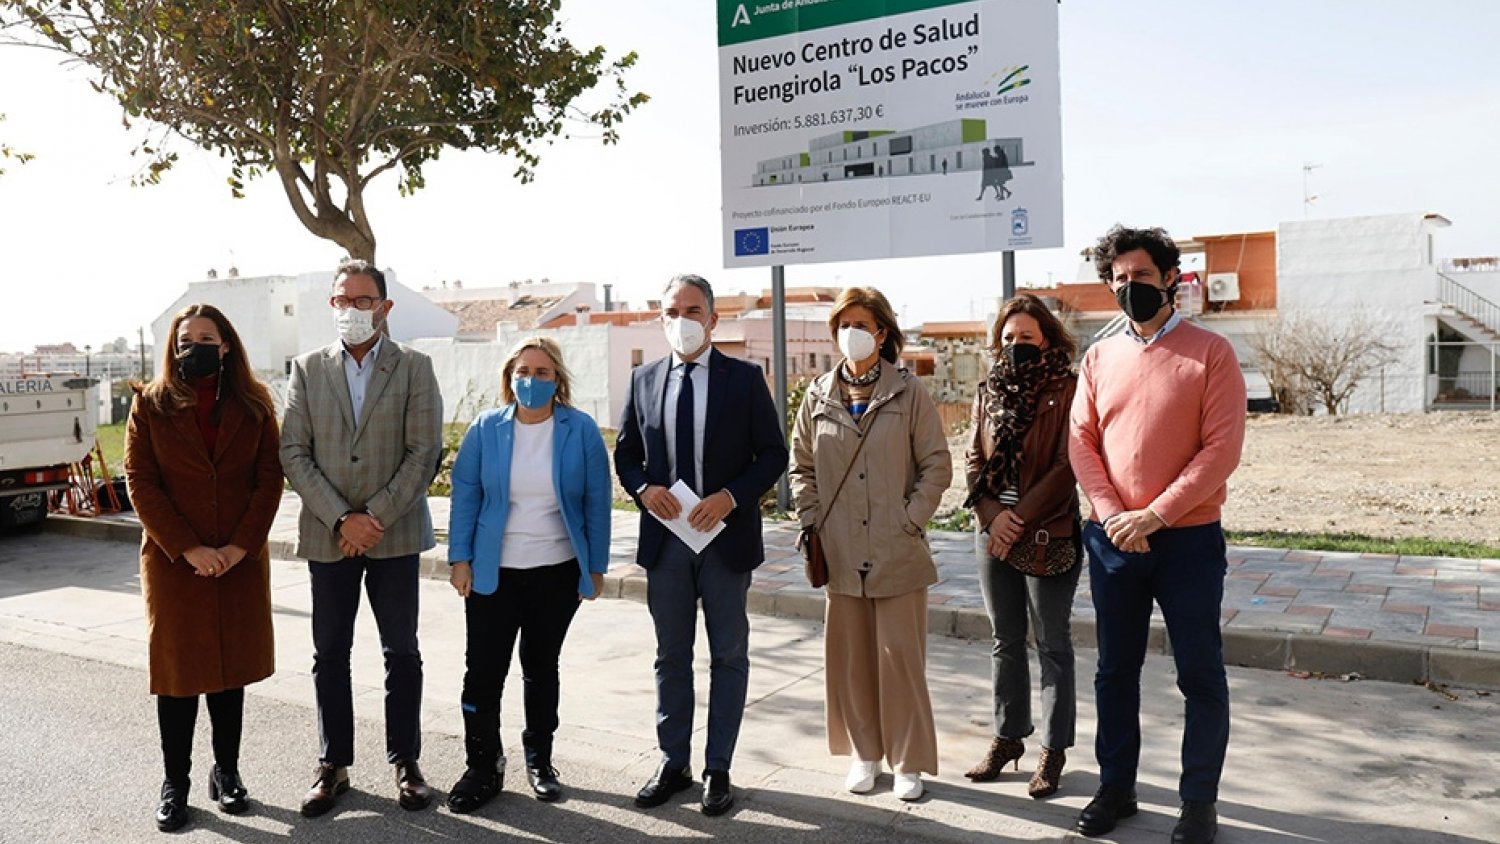 Comienza la obra del nuevo centro de salud Los Pacos de Fuengirola